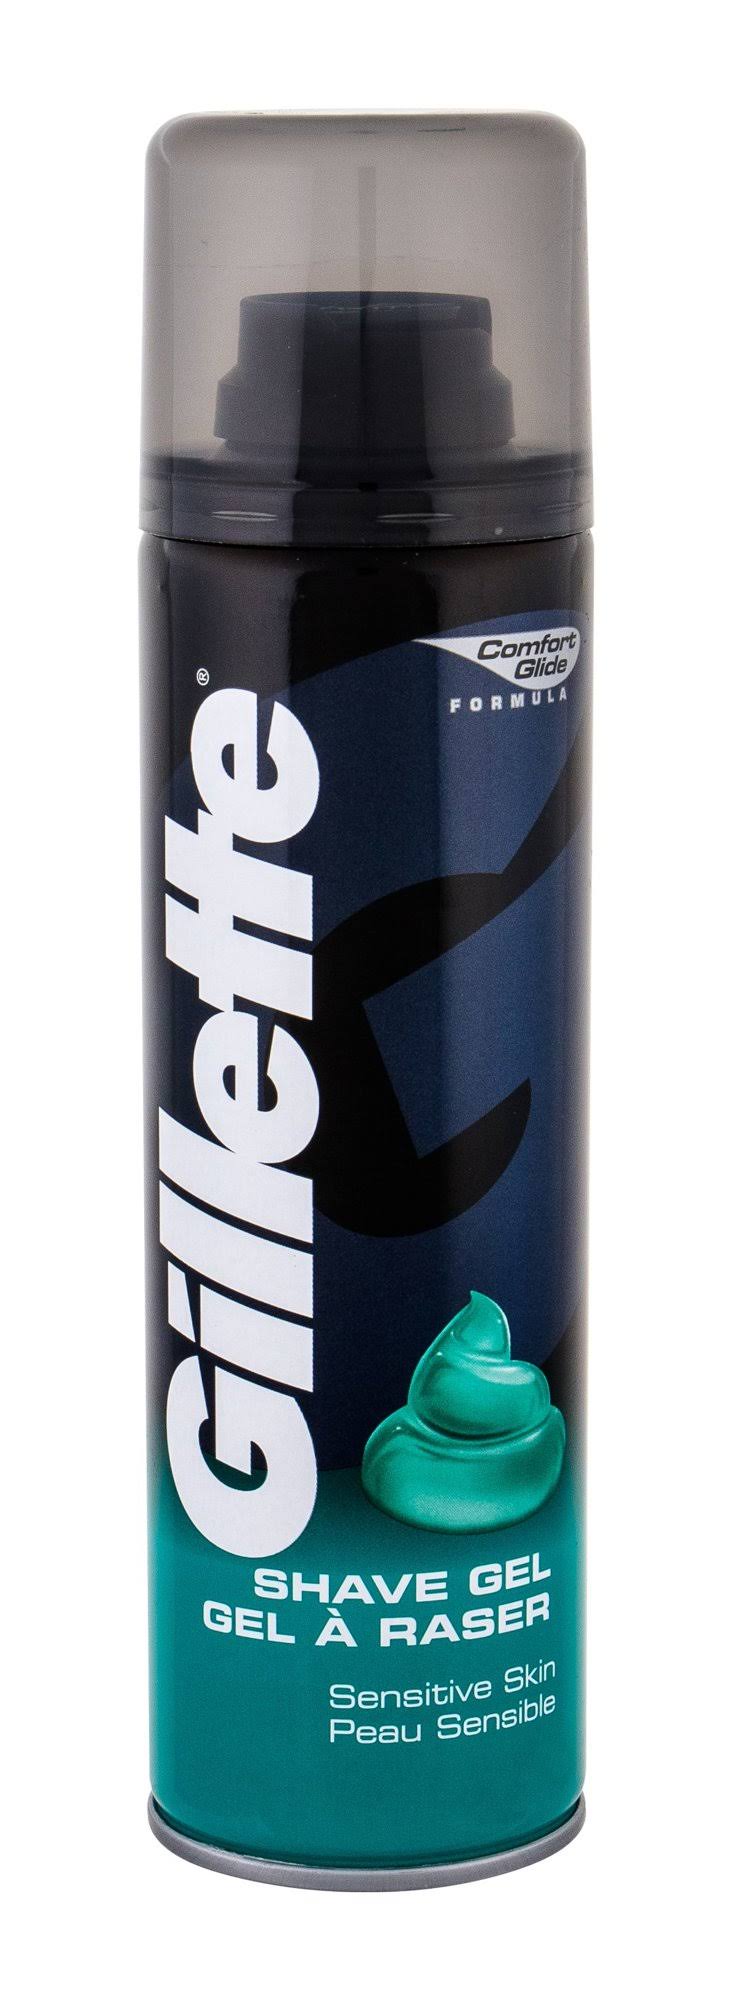 Gillette Classic Sensitive Skin - Shaving gel - spray can - 200 ml - moisturiser